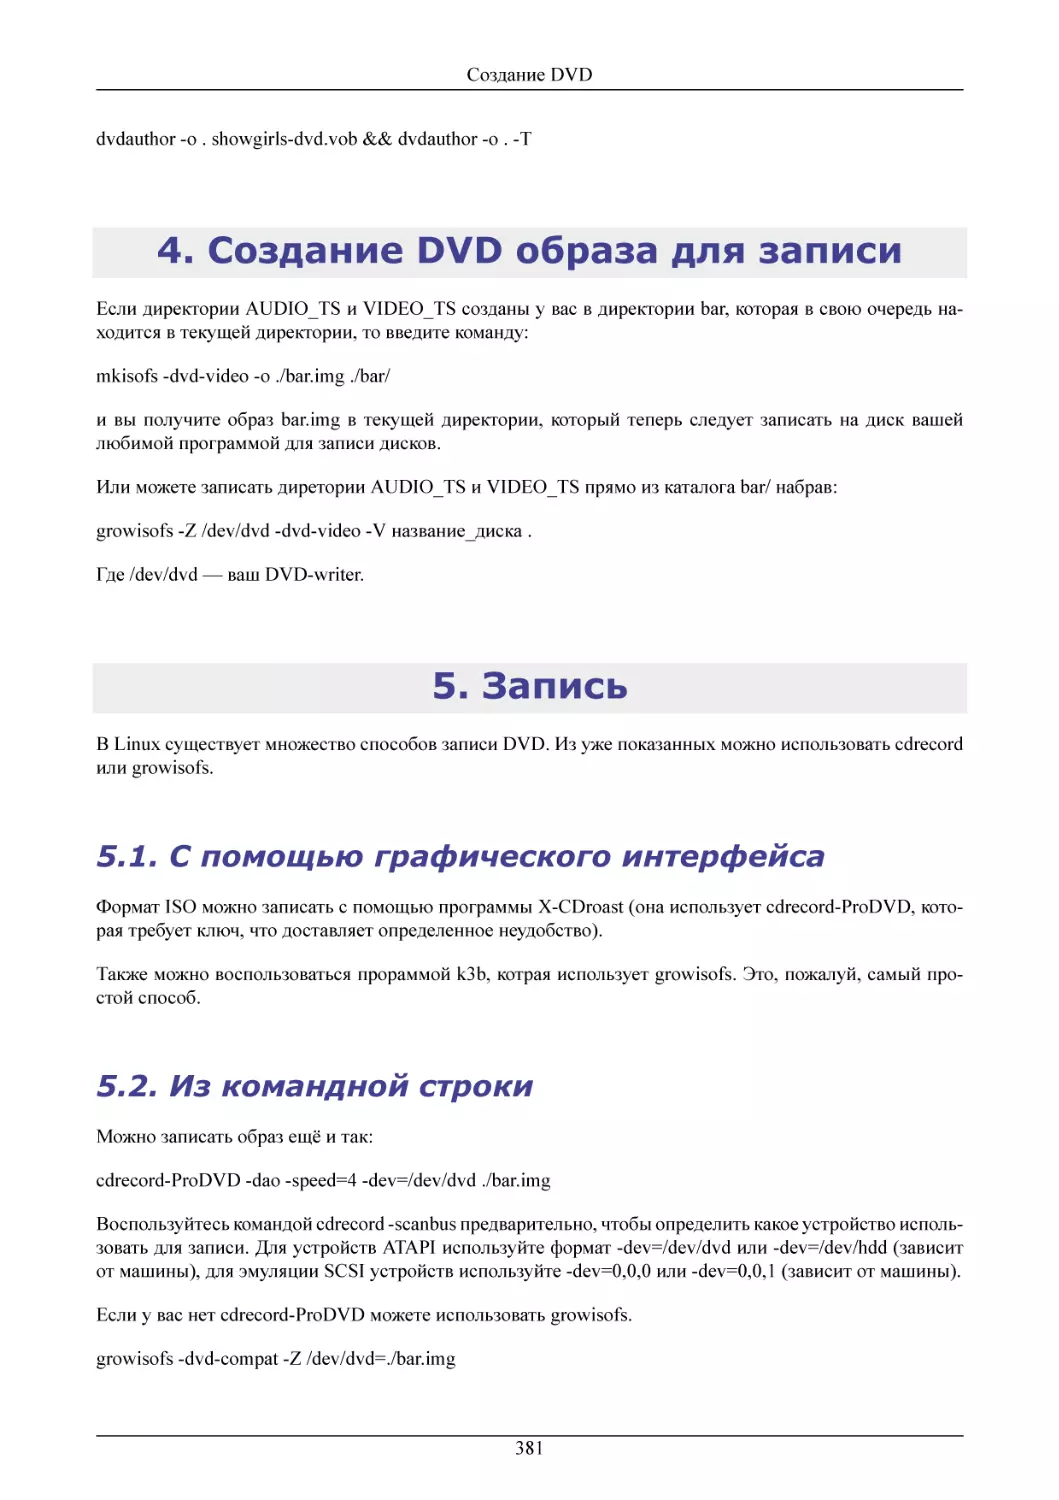 Создание DVD образа для записи
Запись
С помощью графического интерфейса
Из командной строки